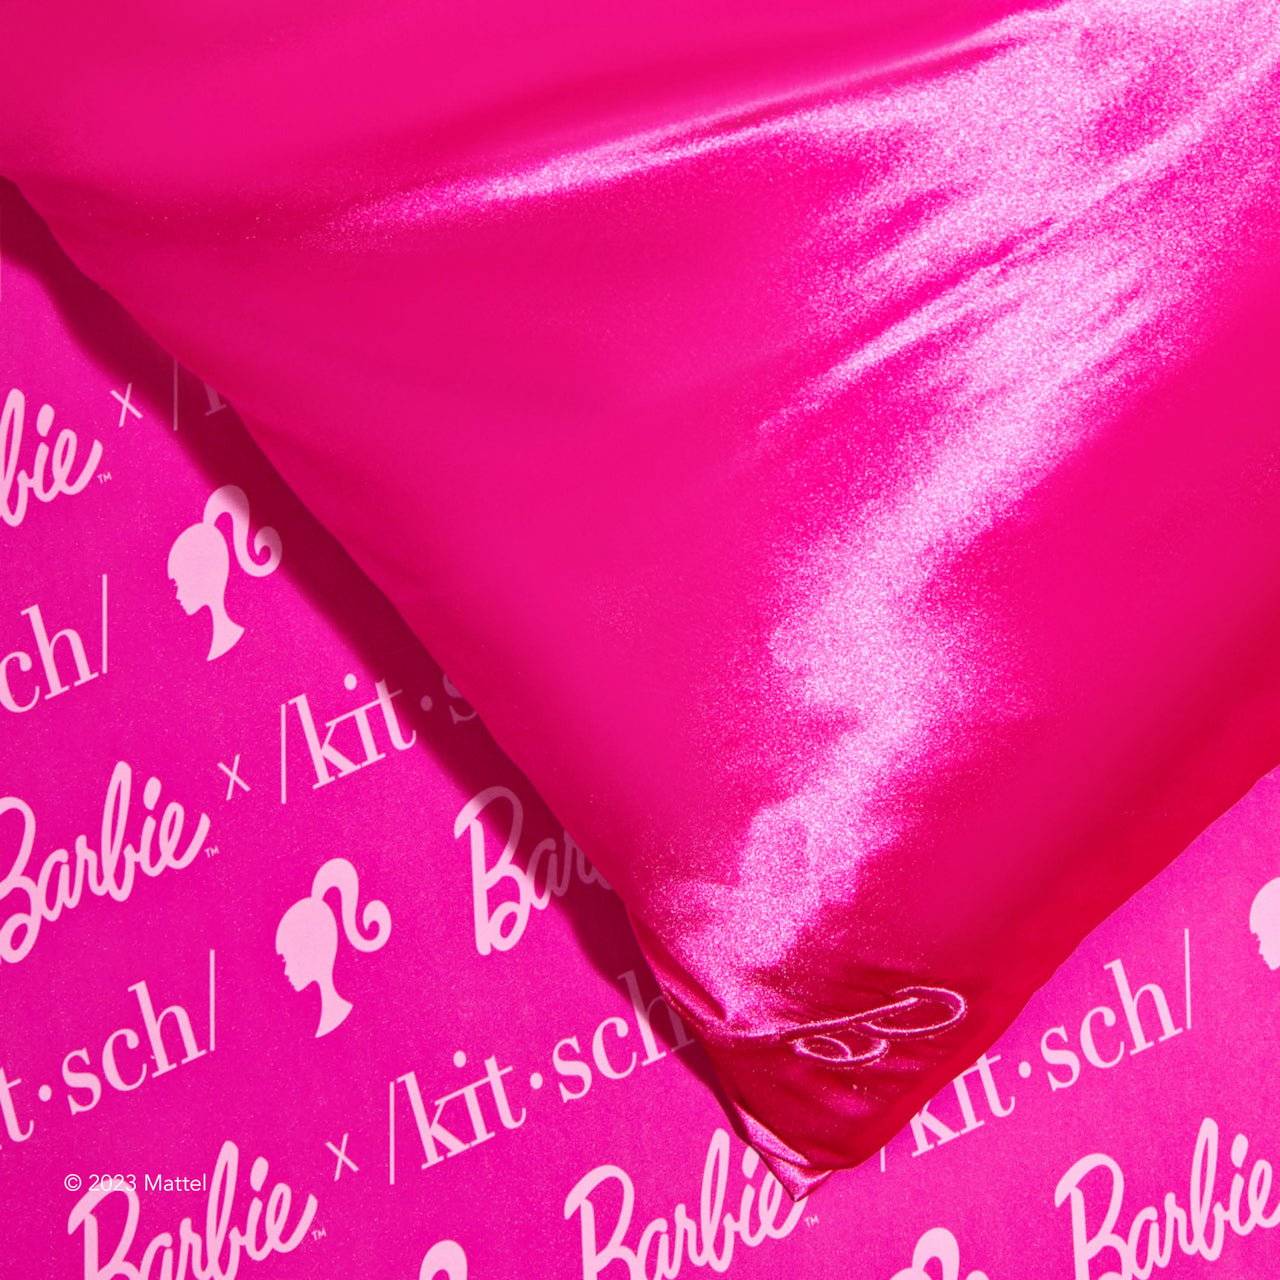 Barbie™ x Kitsch Samlarpaket